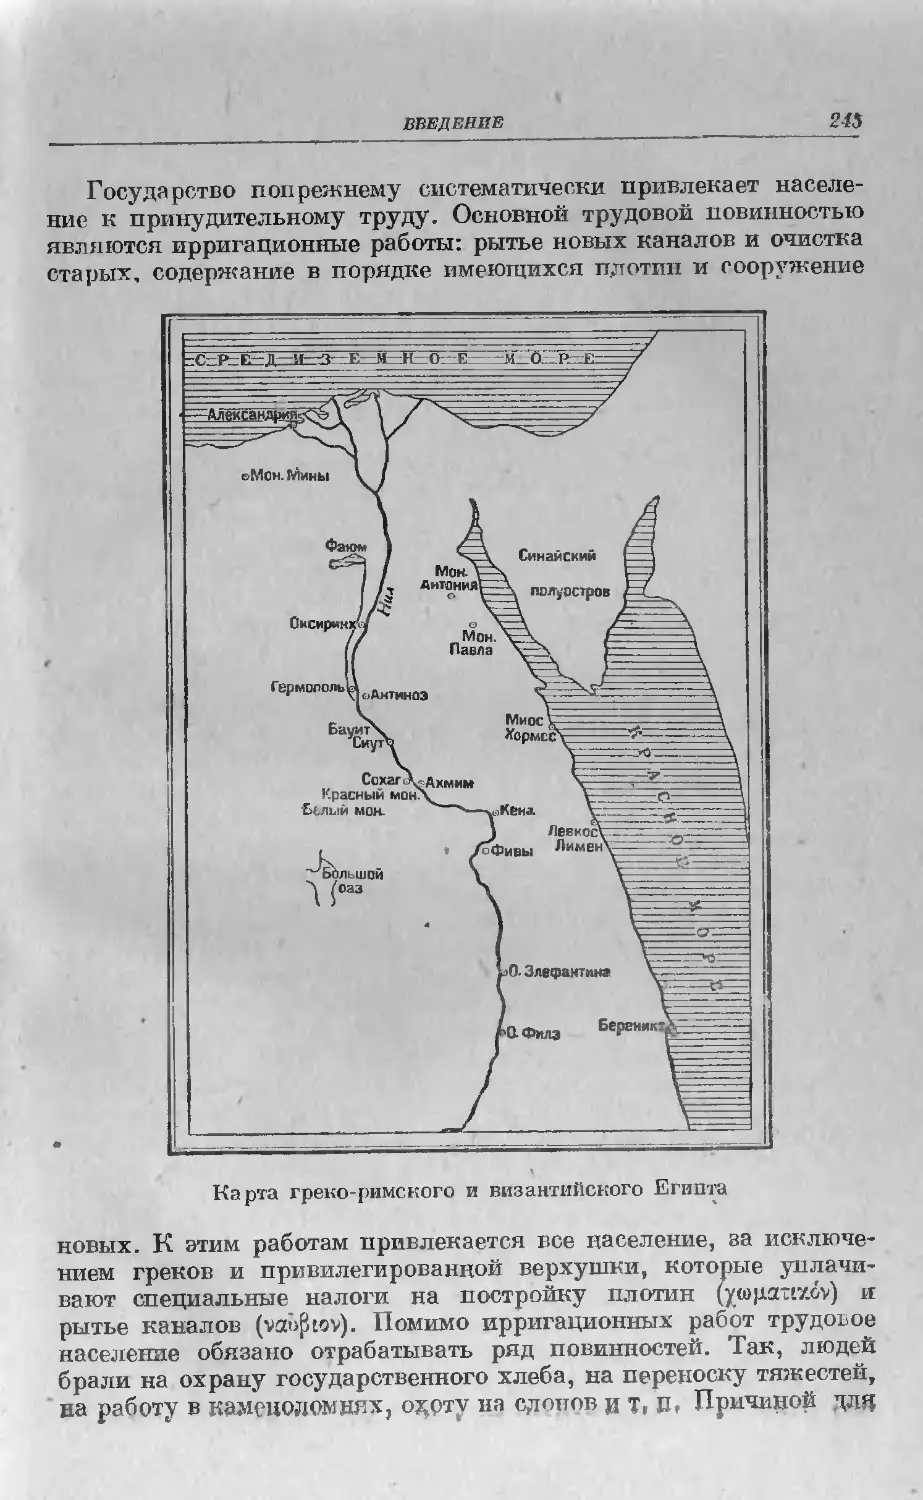 Схематическая карта эллинистического и коптского Египта.